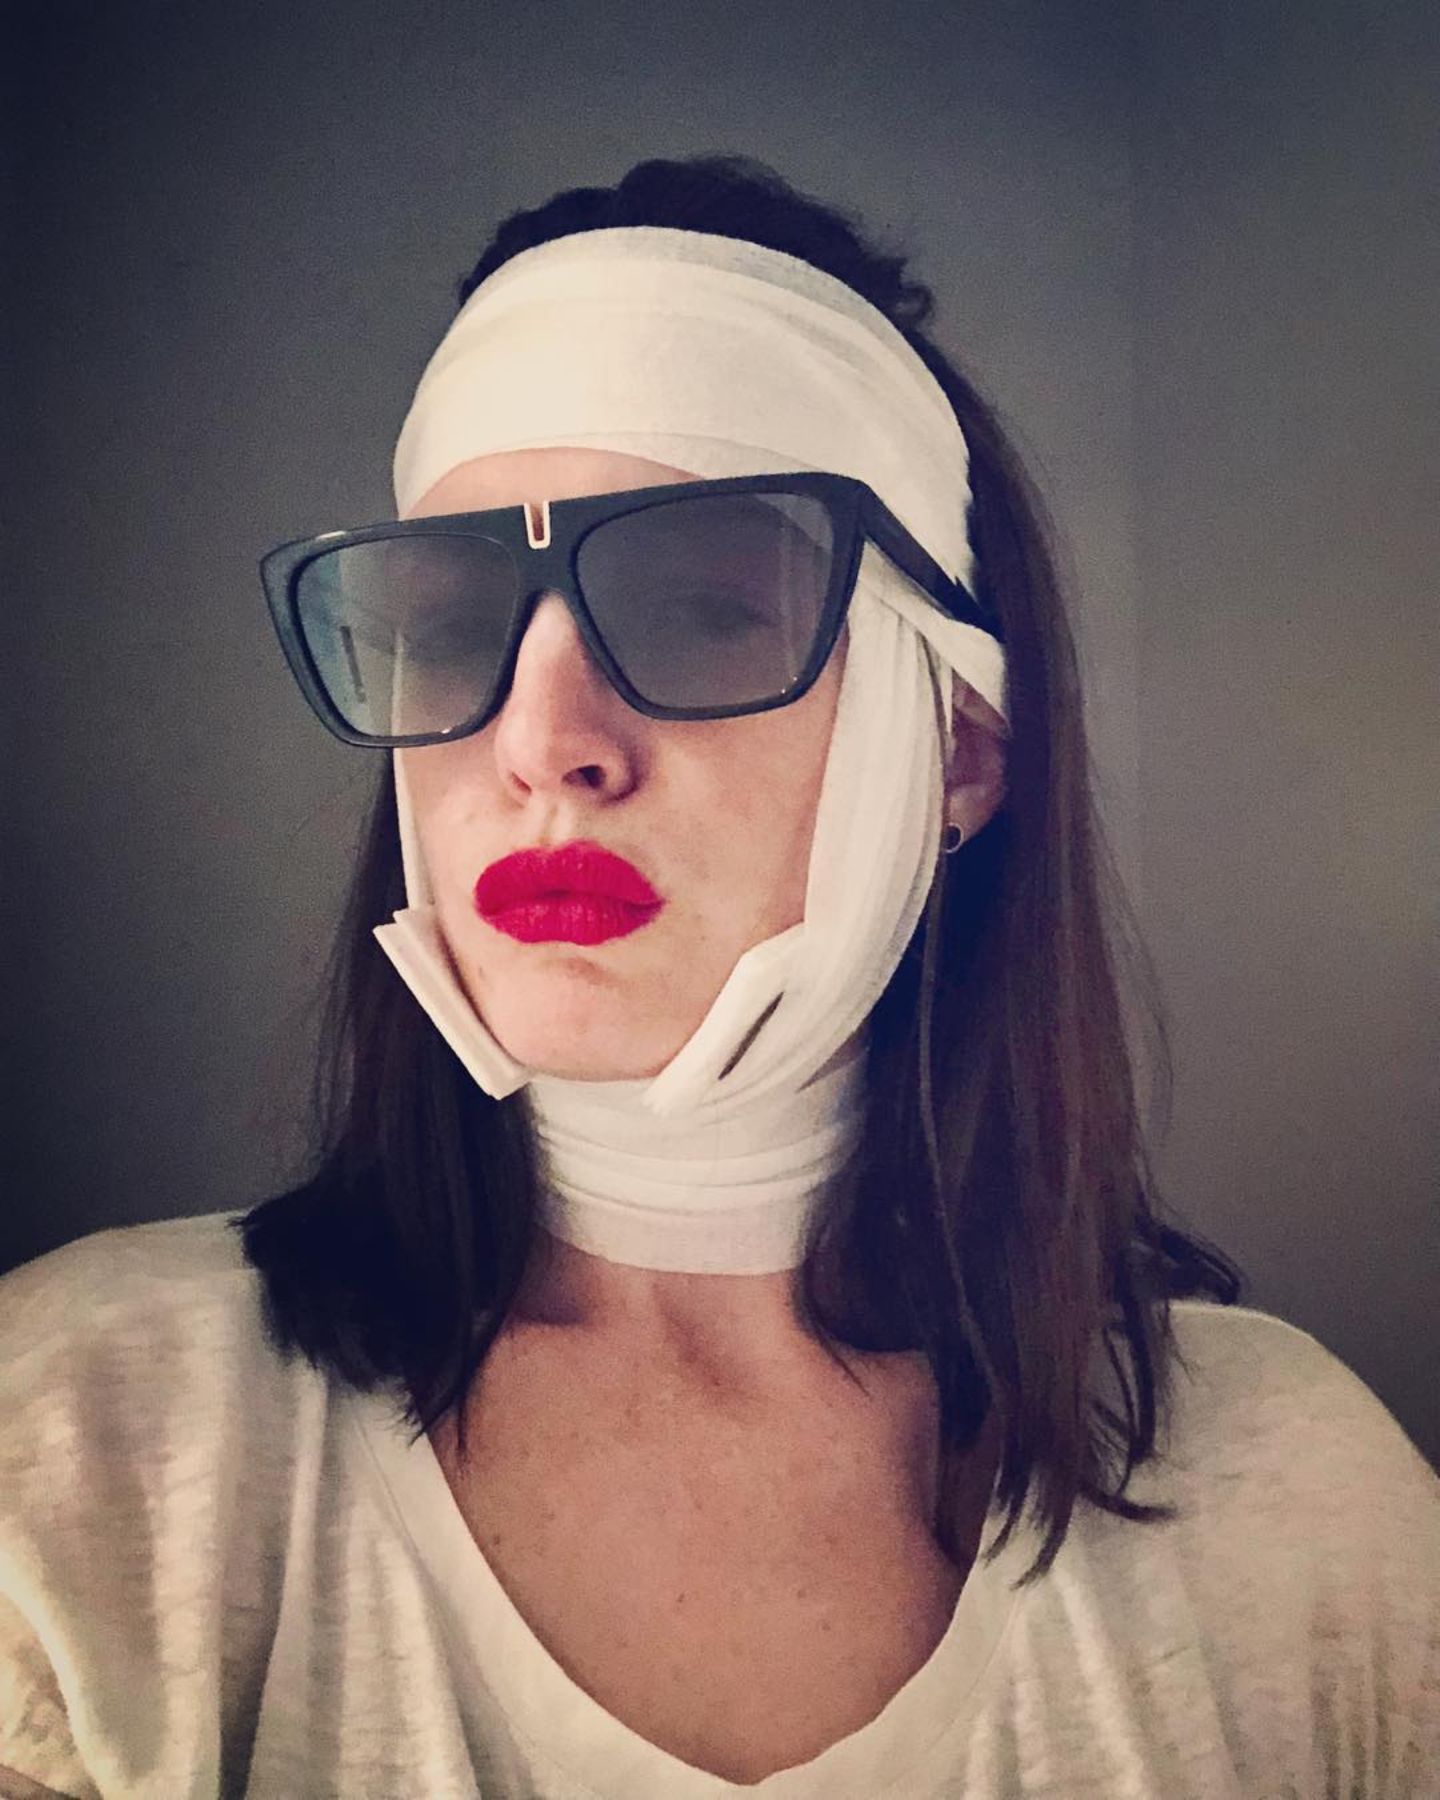 Autsch, schaut aus wie eine missglückte Zahn-Op. Anne Hathaway zeigt sich auf ihrem Instagram-Account mit einer Bandage um den Kopf. Dafür allerdings knallroten Lippenstift dazu. 